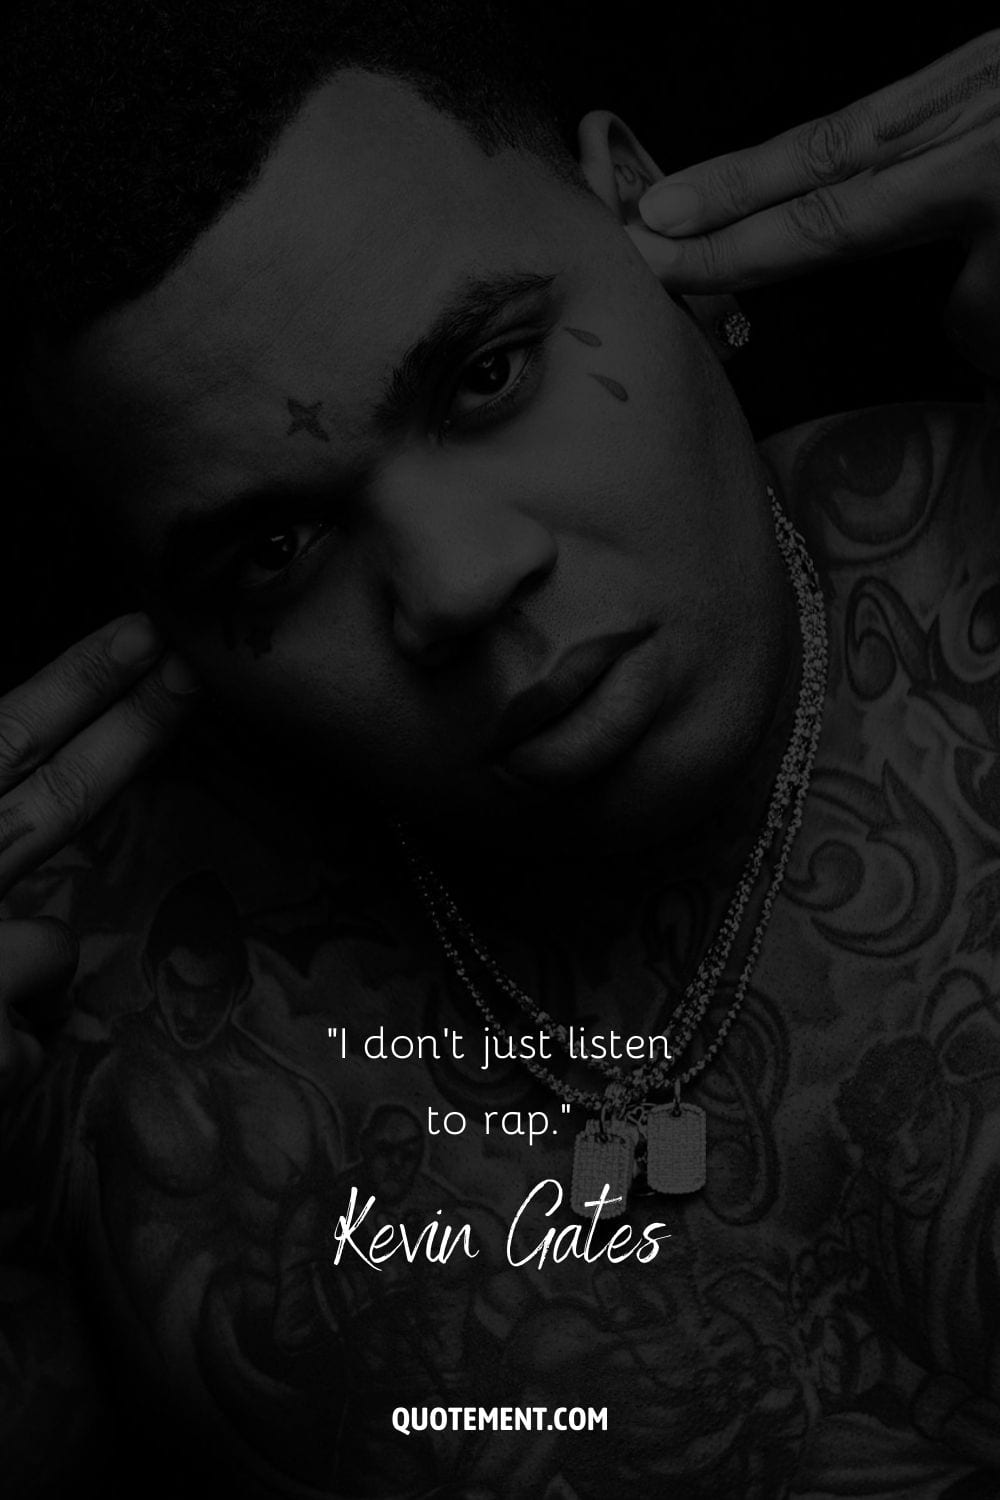 "No sólo escucho rap". - Kevin Gates